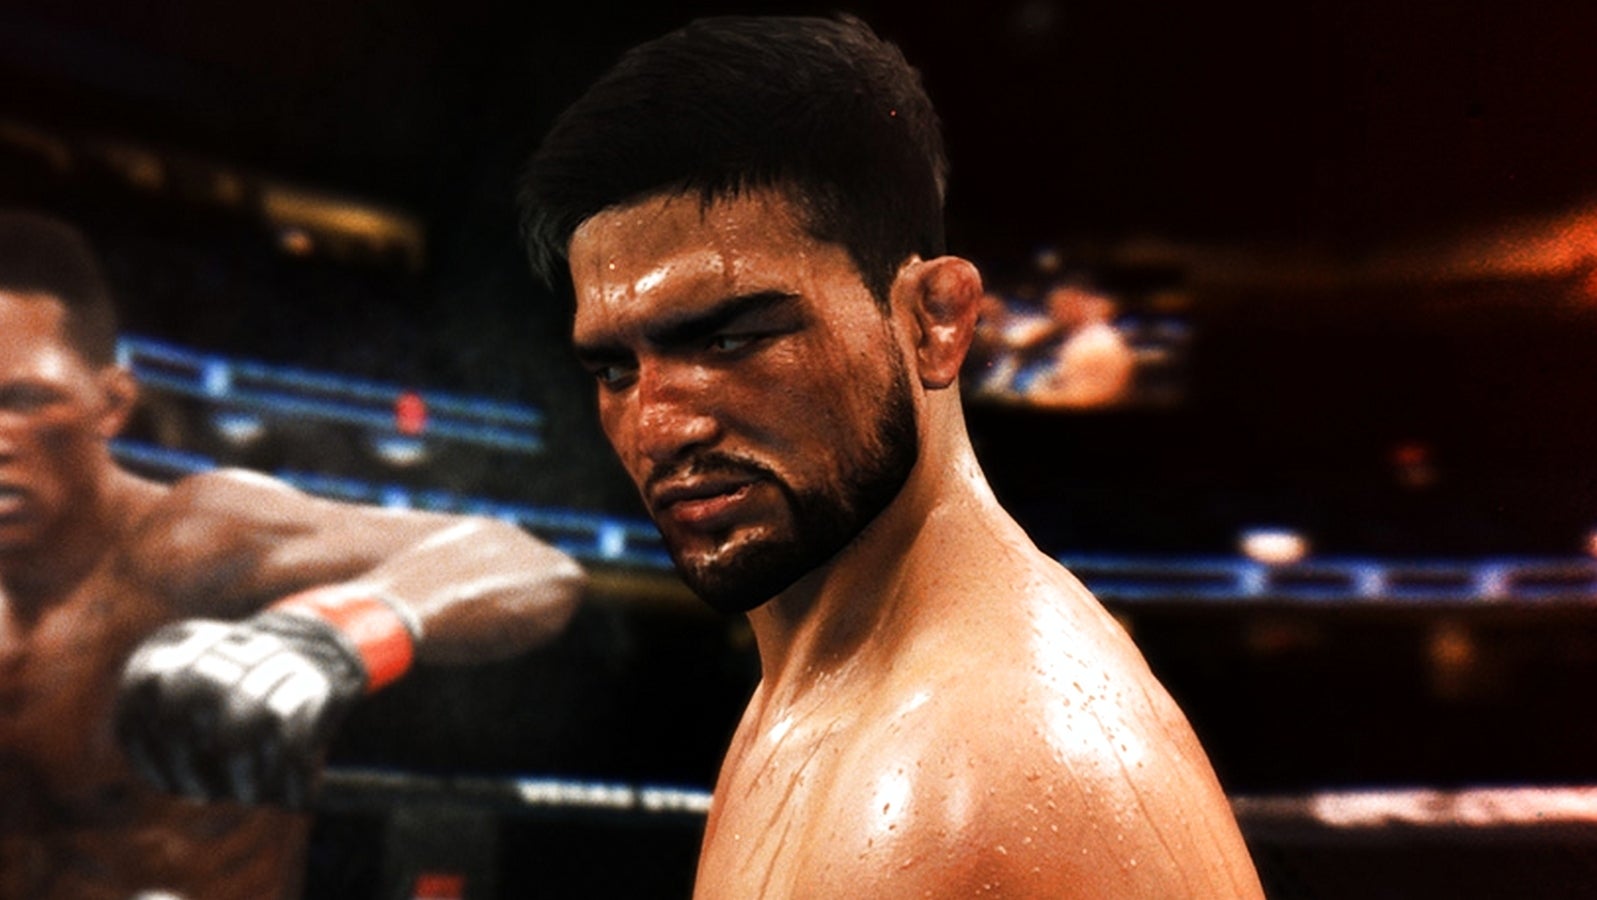 Bilder zu UFC 4: EA entschuldigt sich nach Kritik an Werbeeinblendungen